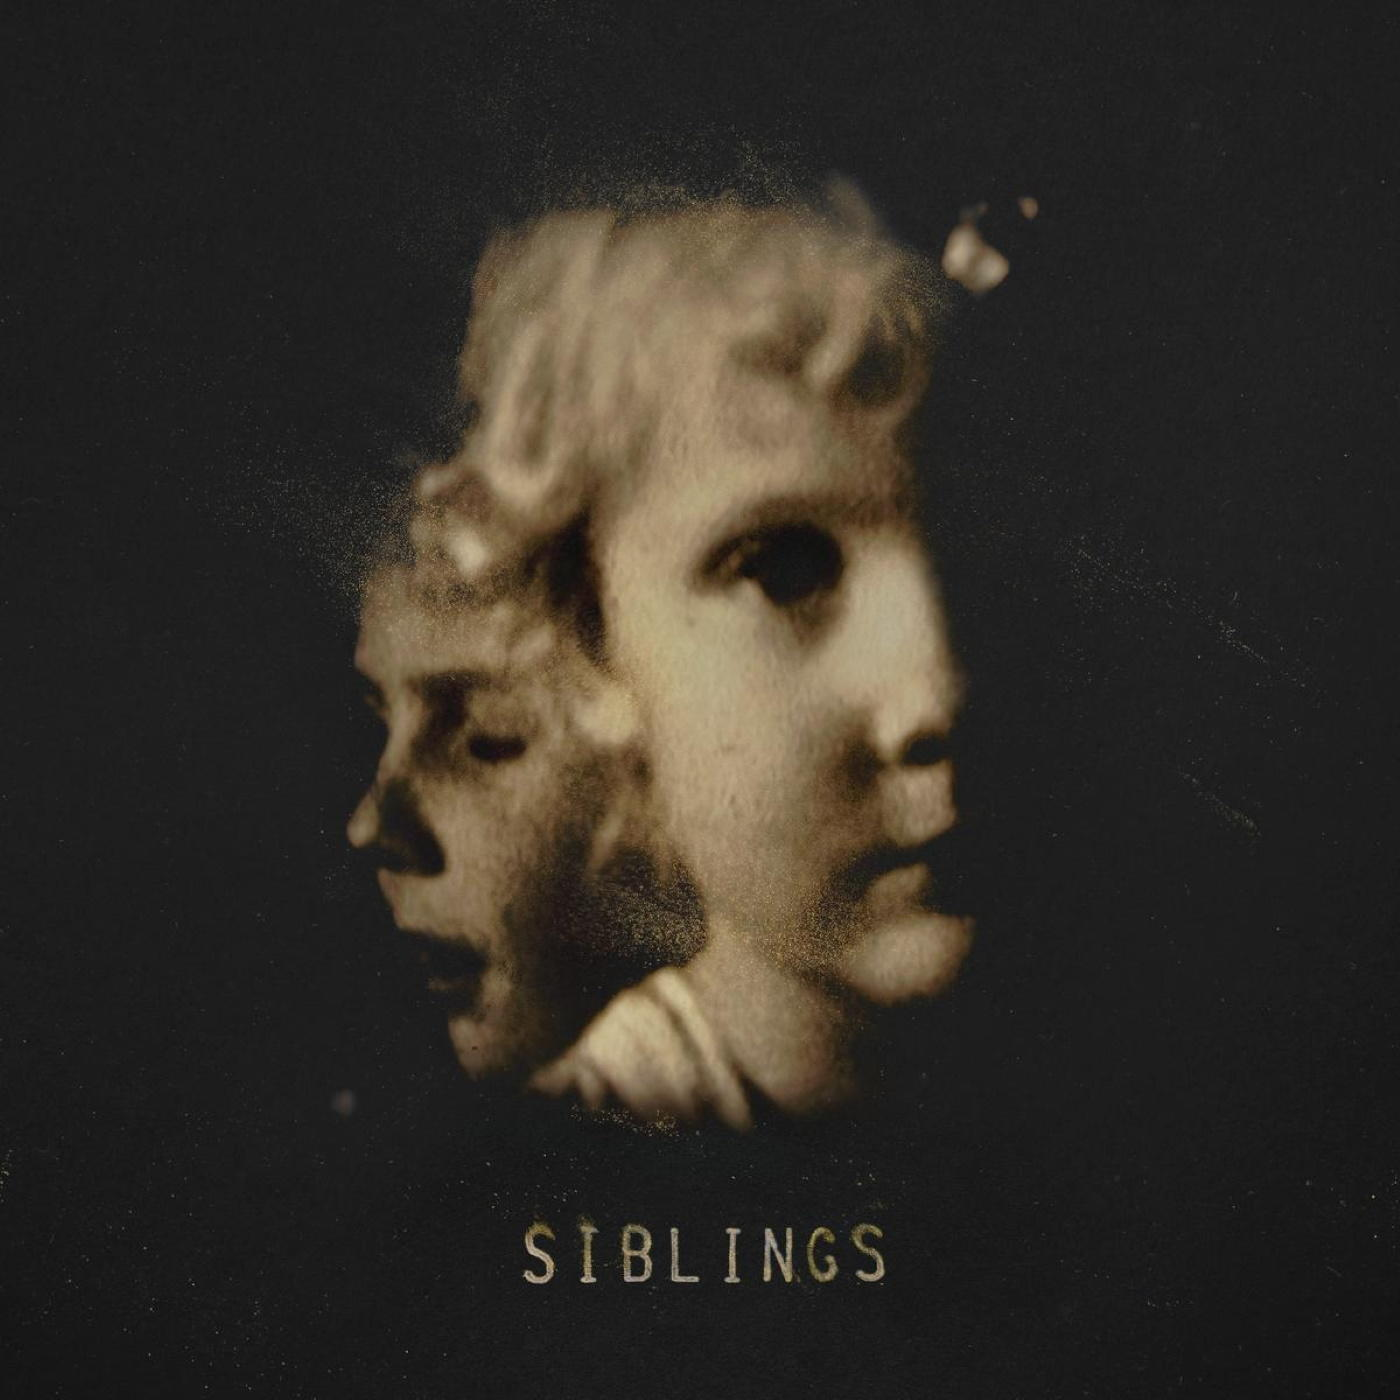 Alex Somers - - (Vinyl) Siblings